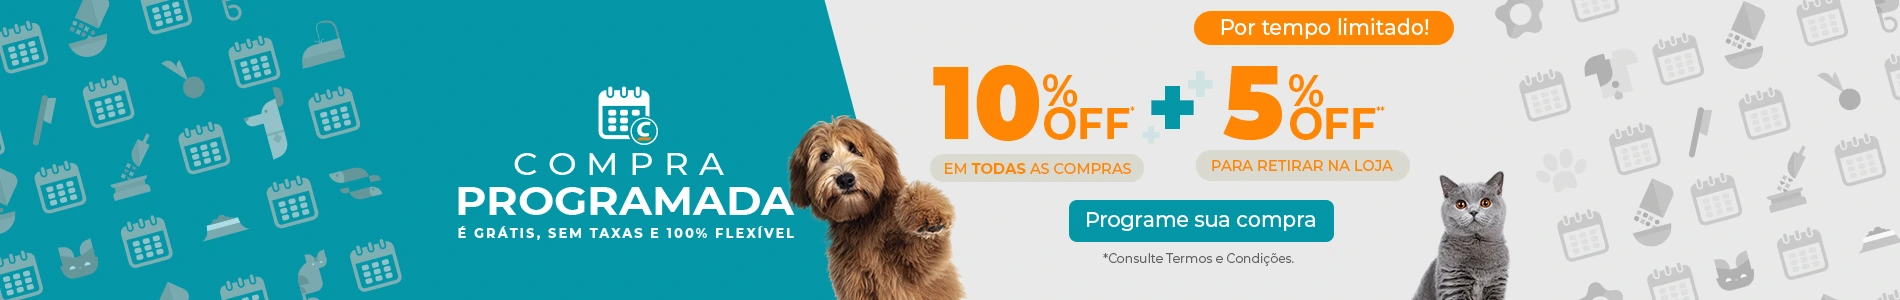 loja de suprimentos para animais de estimacao curitiba Cobasi Curitiba Novo Mundo